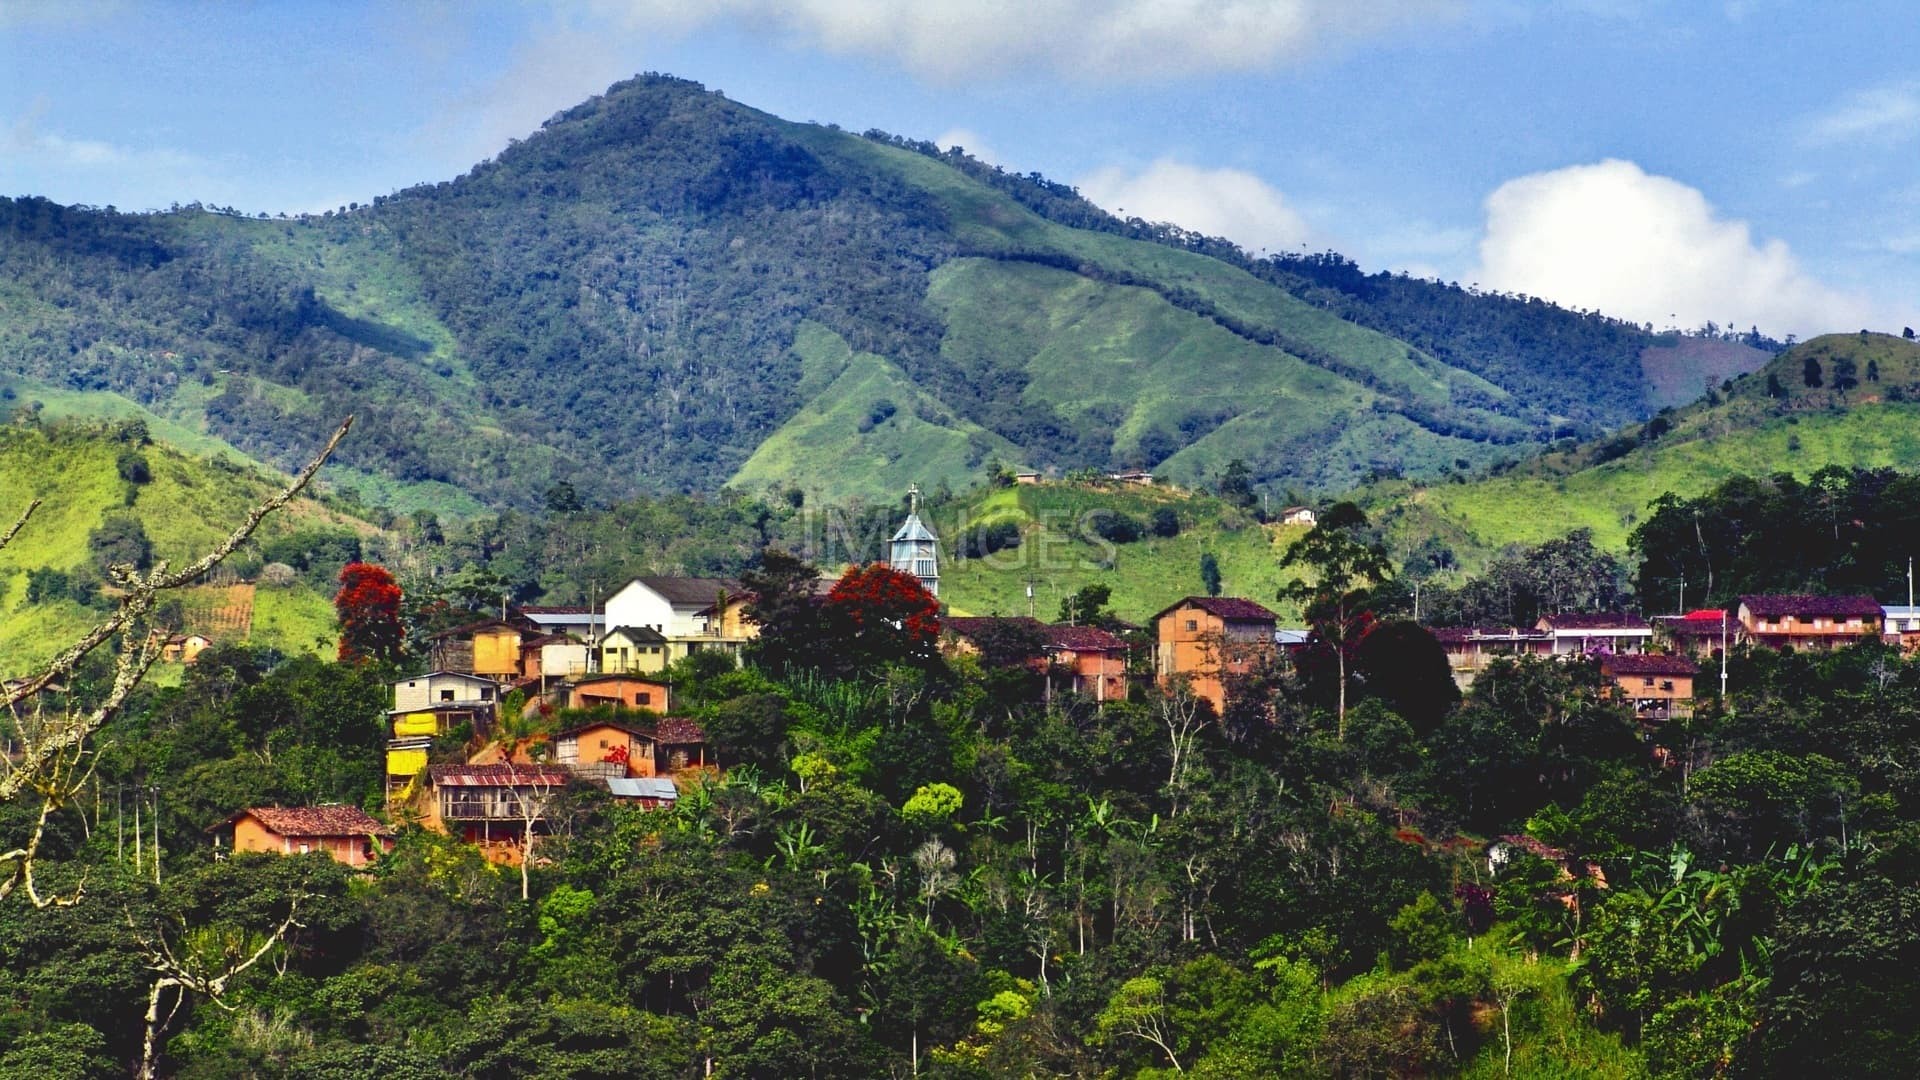 1920x1080 People, Ecuador, Landscape, Mountain